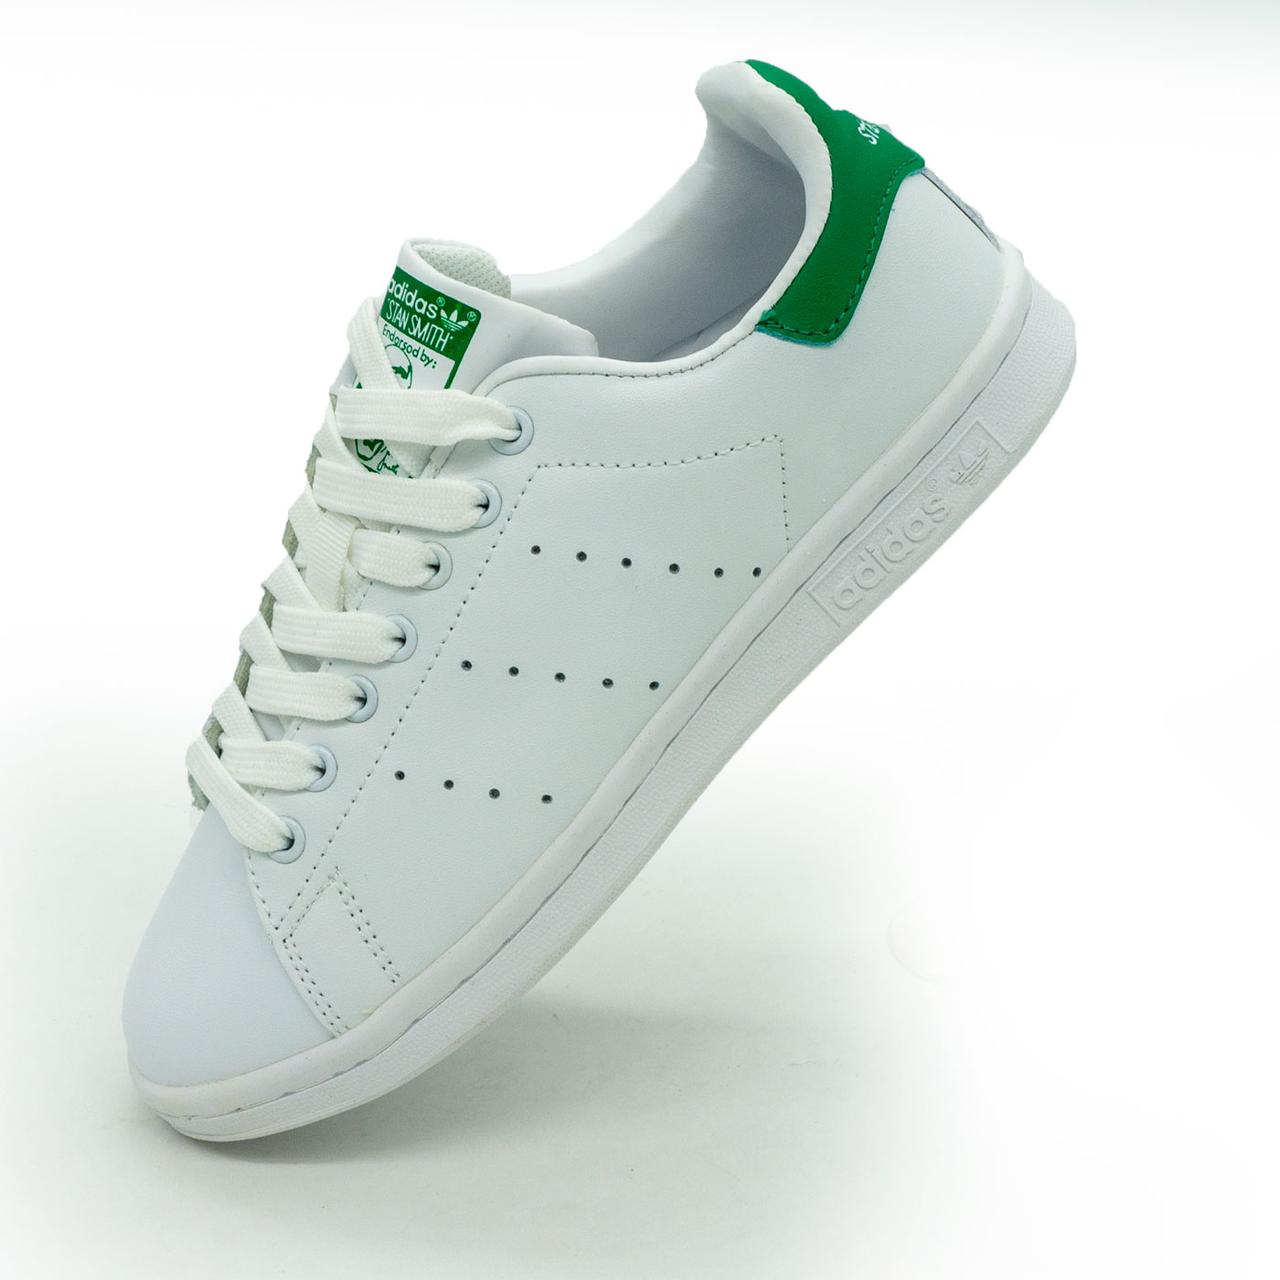 Жіночі кросівки Adidas Stan Smith біло зелені 37. Розміри в наявності: 37.